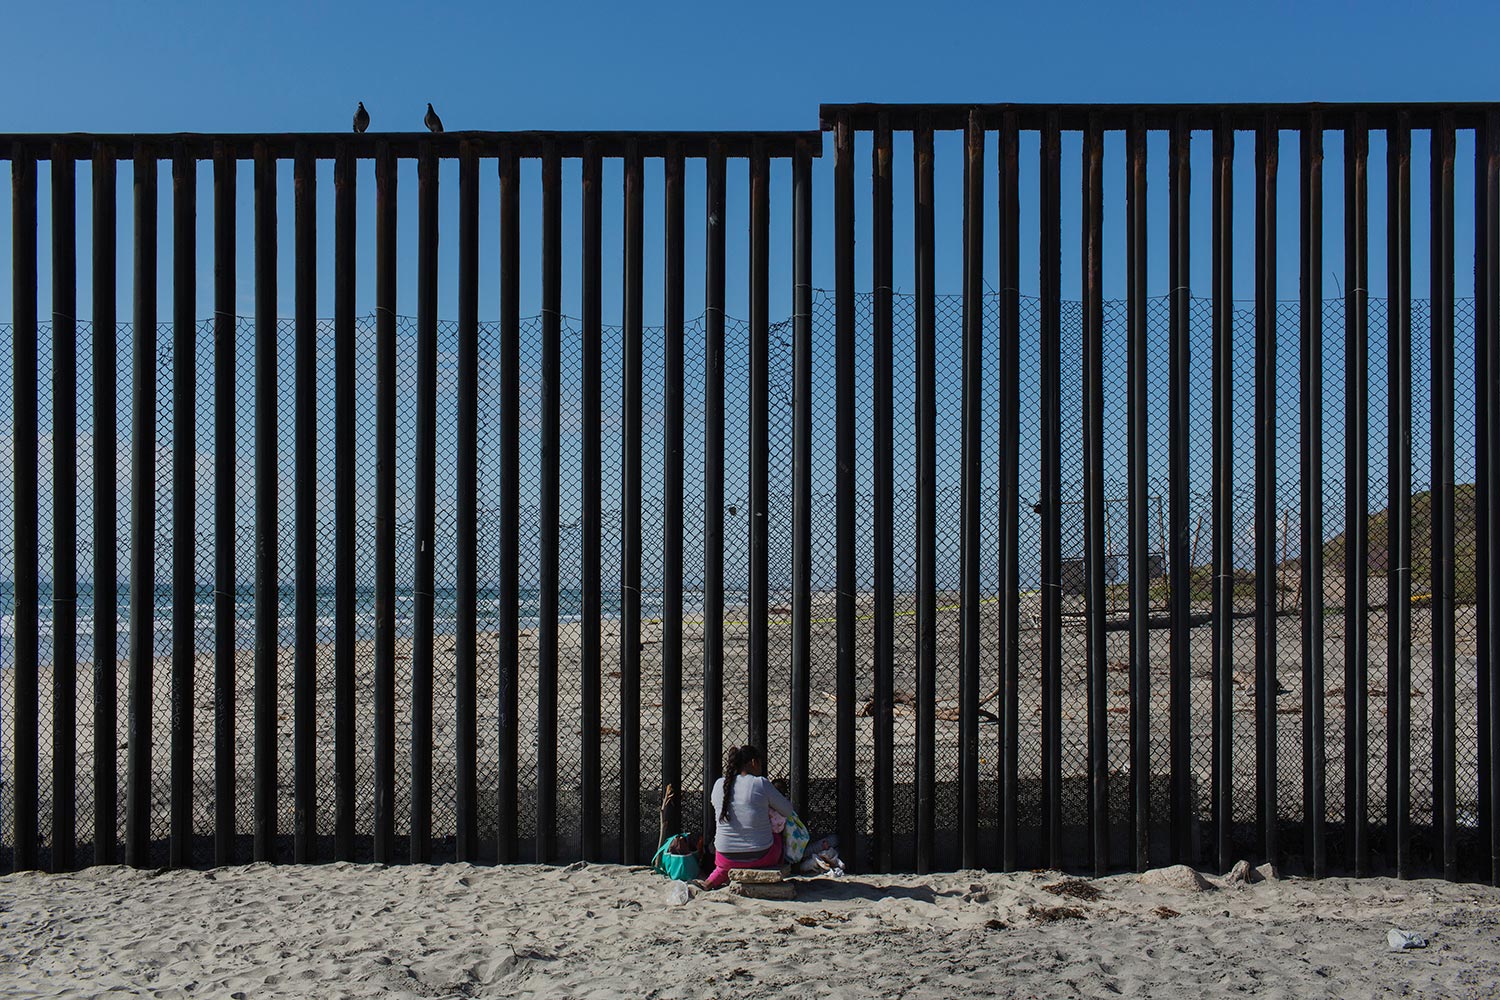 Muro divide praias com perfis distintos nos EUA e no México - TNH1